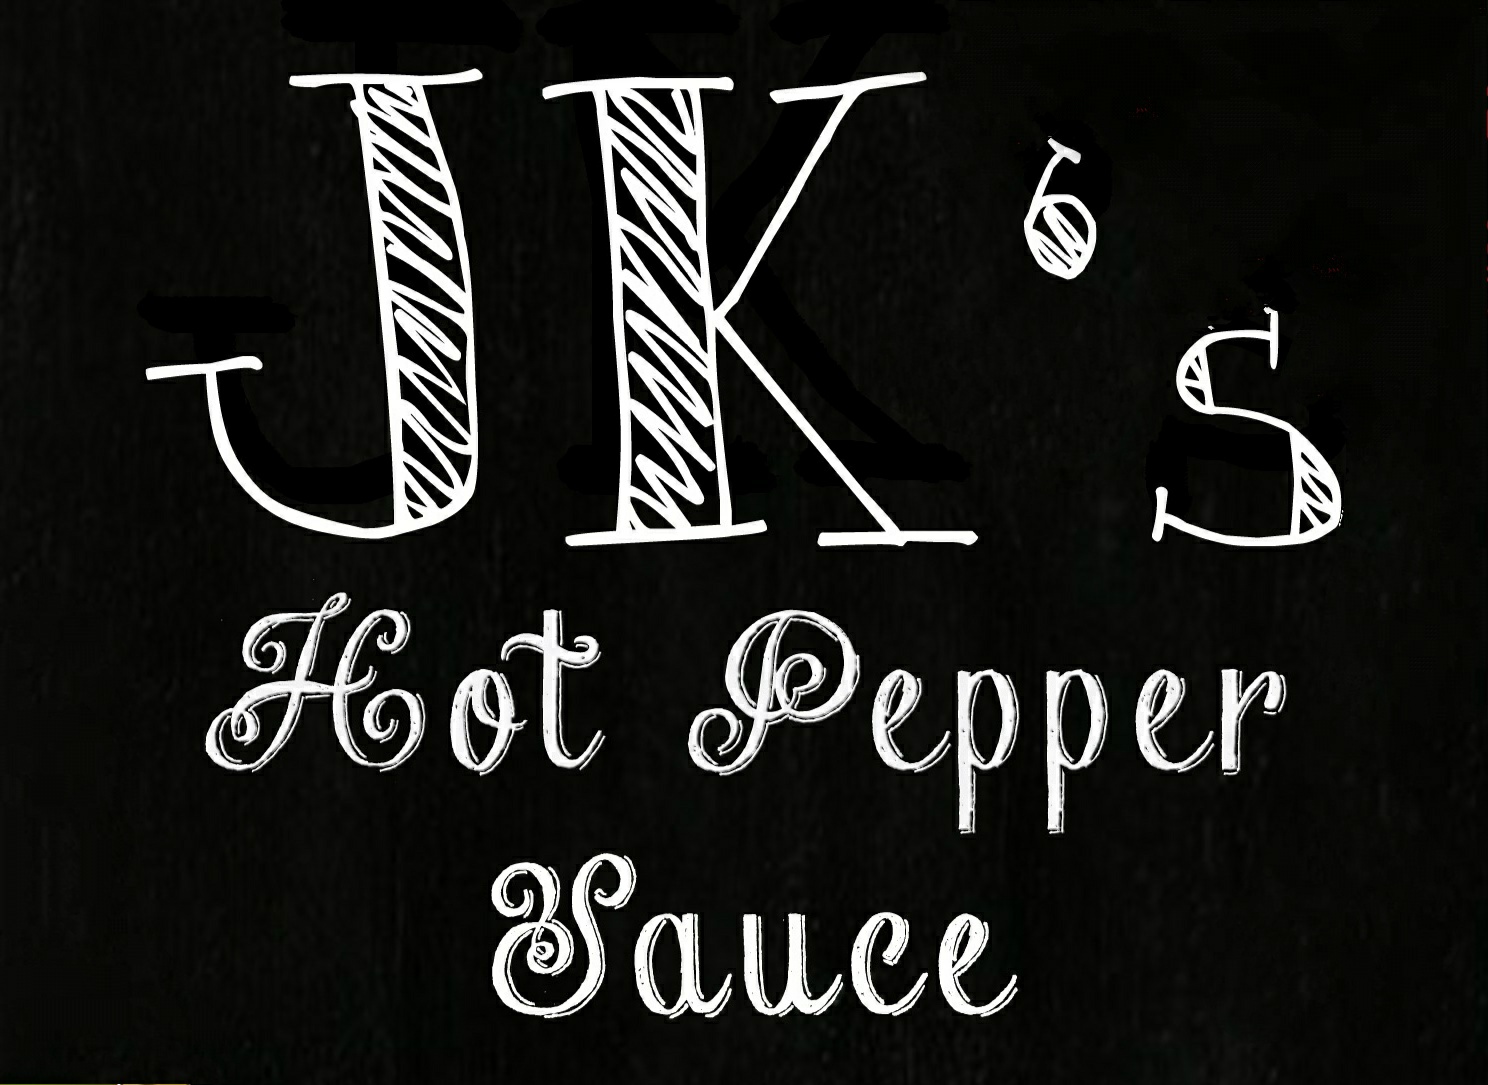 JK's Hot Pepper Sauce